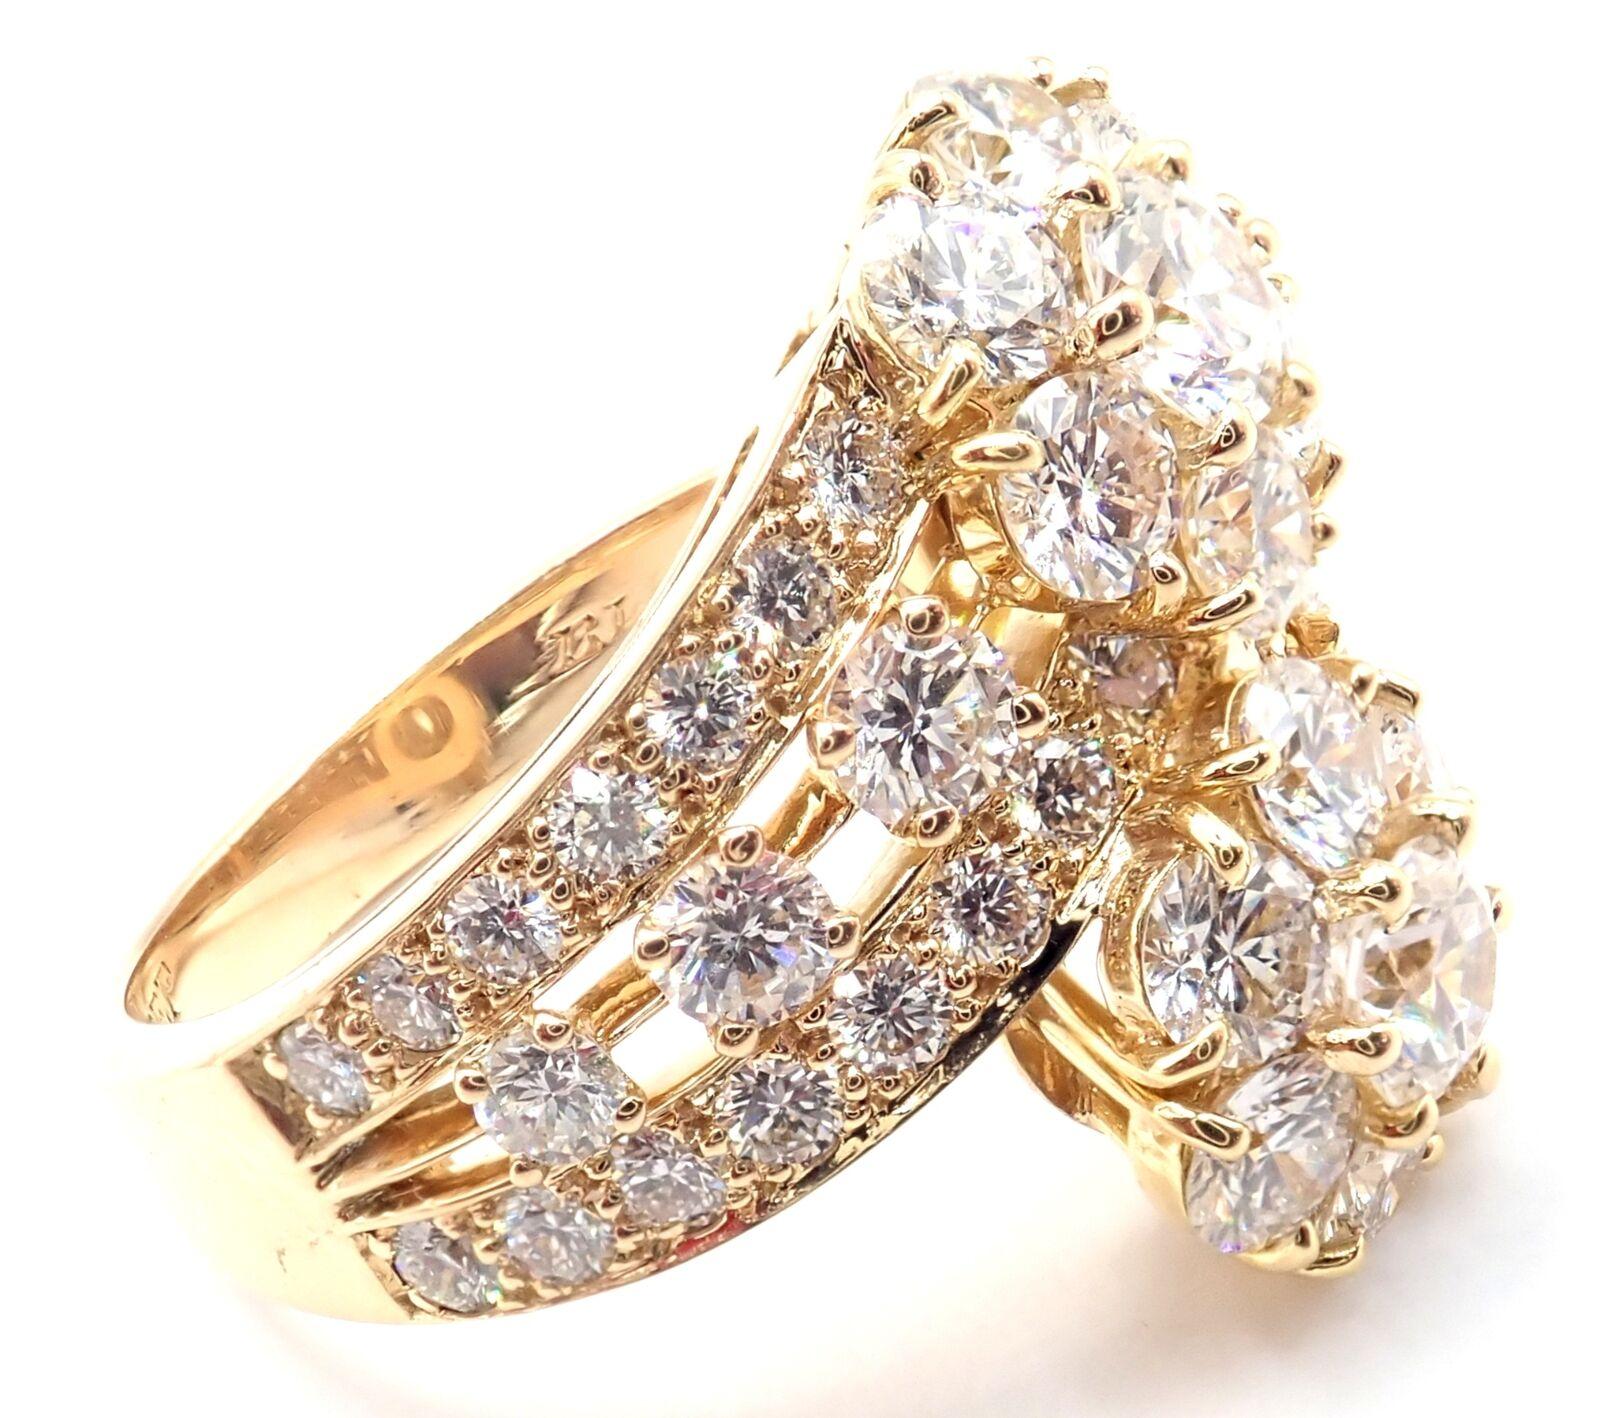 18k Gelbgold Diamant Schneeflocke zwei Blumen Ring von Van Cleef & Arpels.
Mit Diamanten im runden Brillantschliff, Reinheit VVS1, Farbe E. Gesamtgewicht der Diamanten 3,01ct
Einzelheiten:
Größe: Europäisch 52, US 6
Breite an der Oberseite: